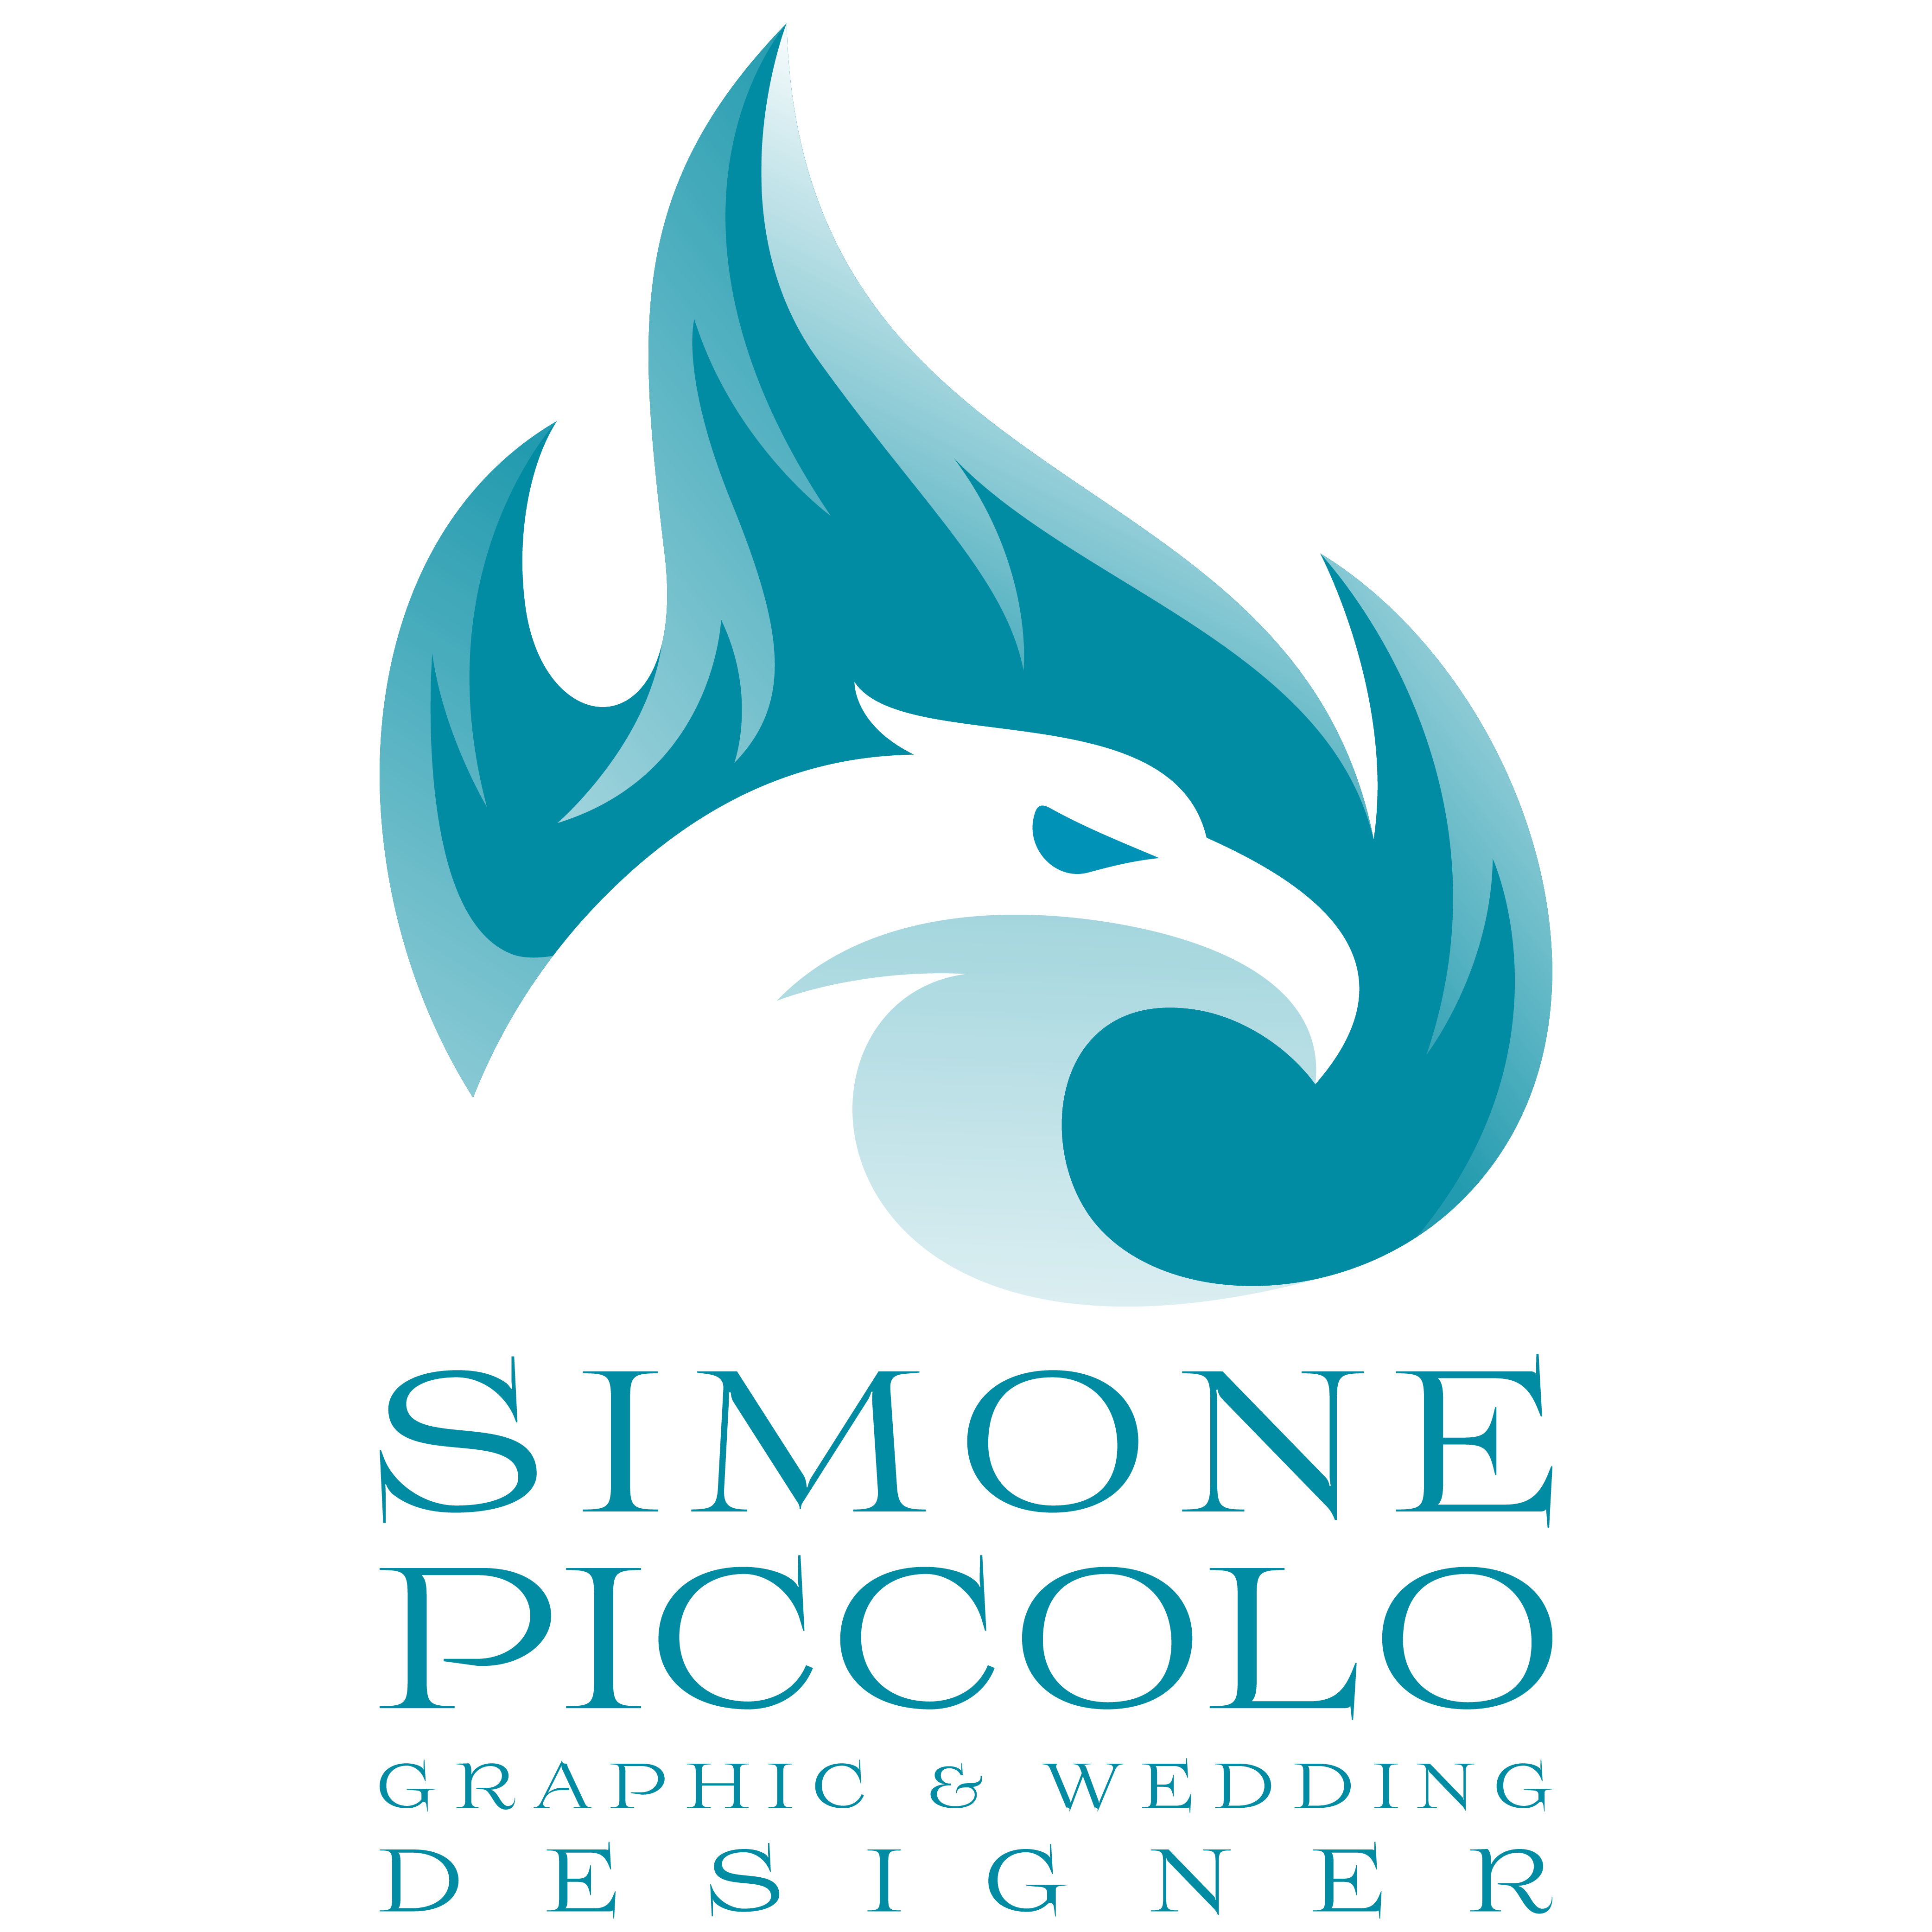 HOME PAGE - Simone Piccolo - Graphic & Wedding Designer